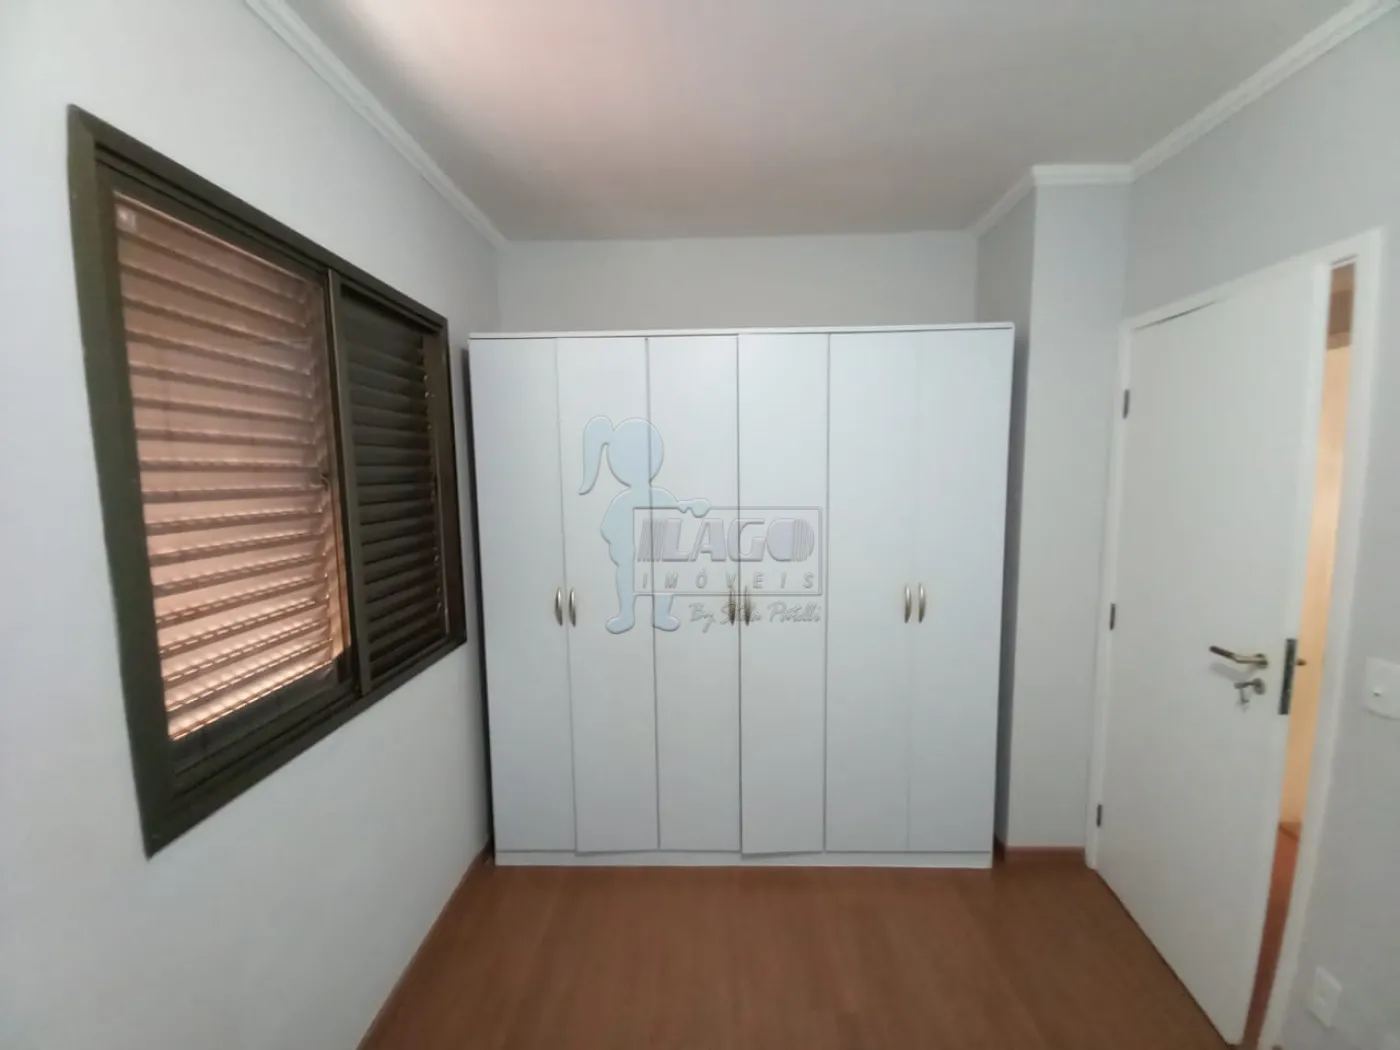 Alugar Apartamentos / Padrão em Ribeirão Preto R$ 1.700,00 - Foto 20